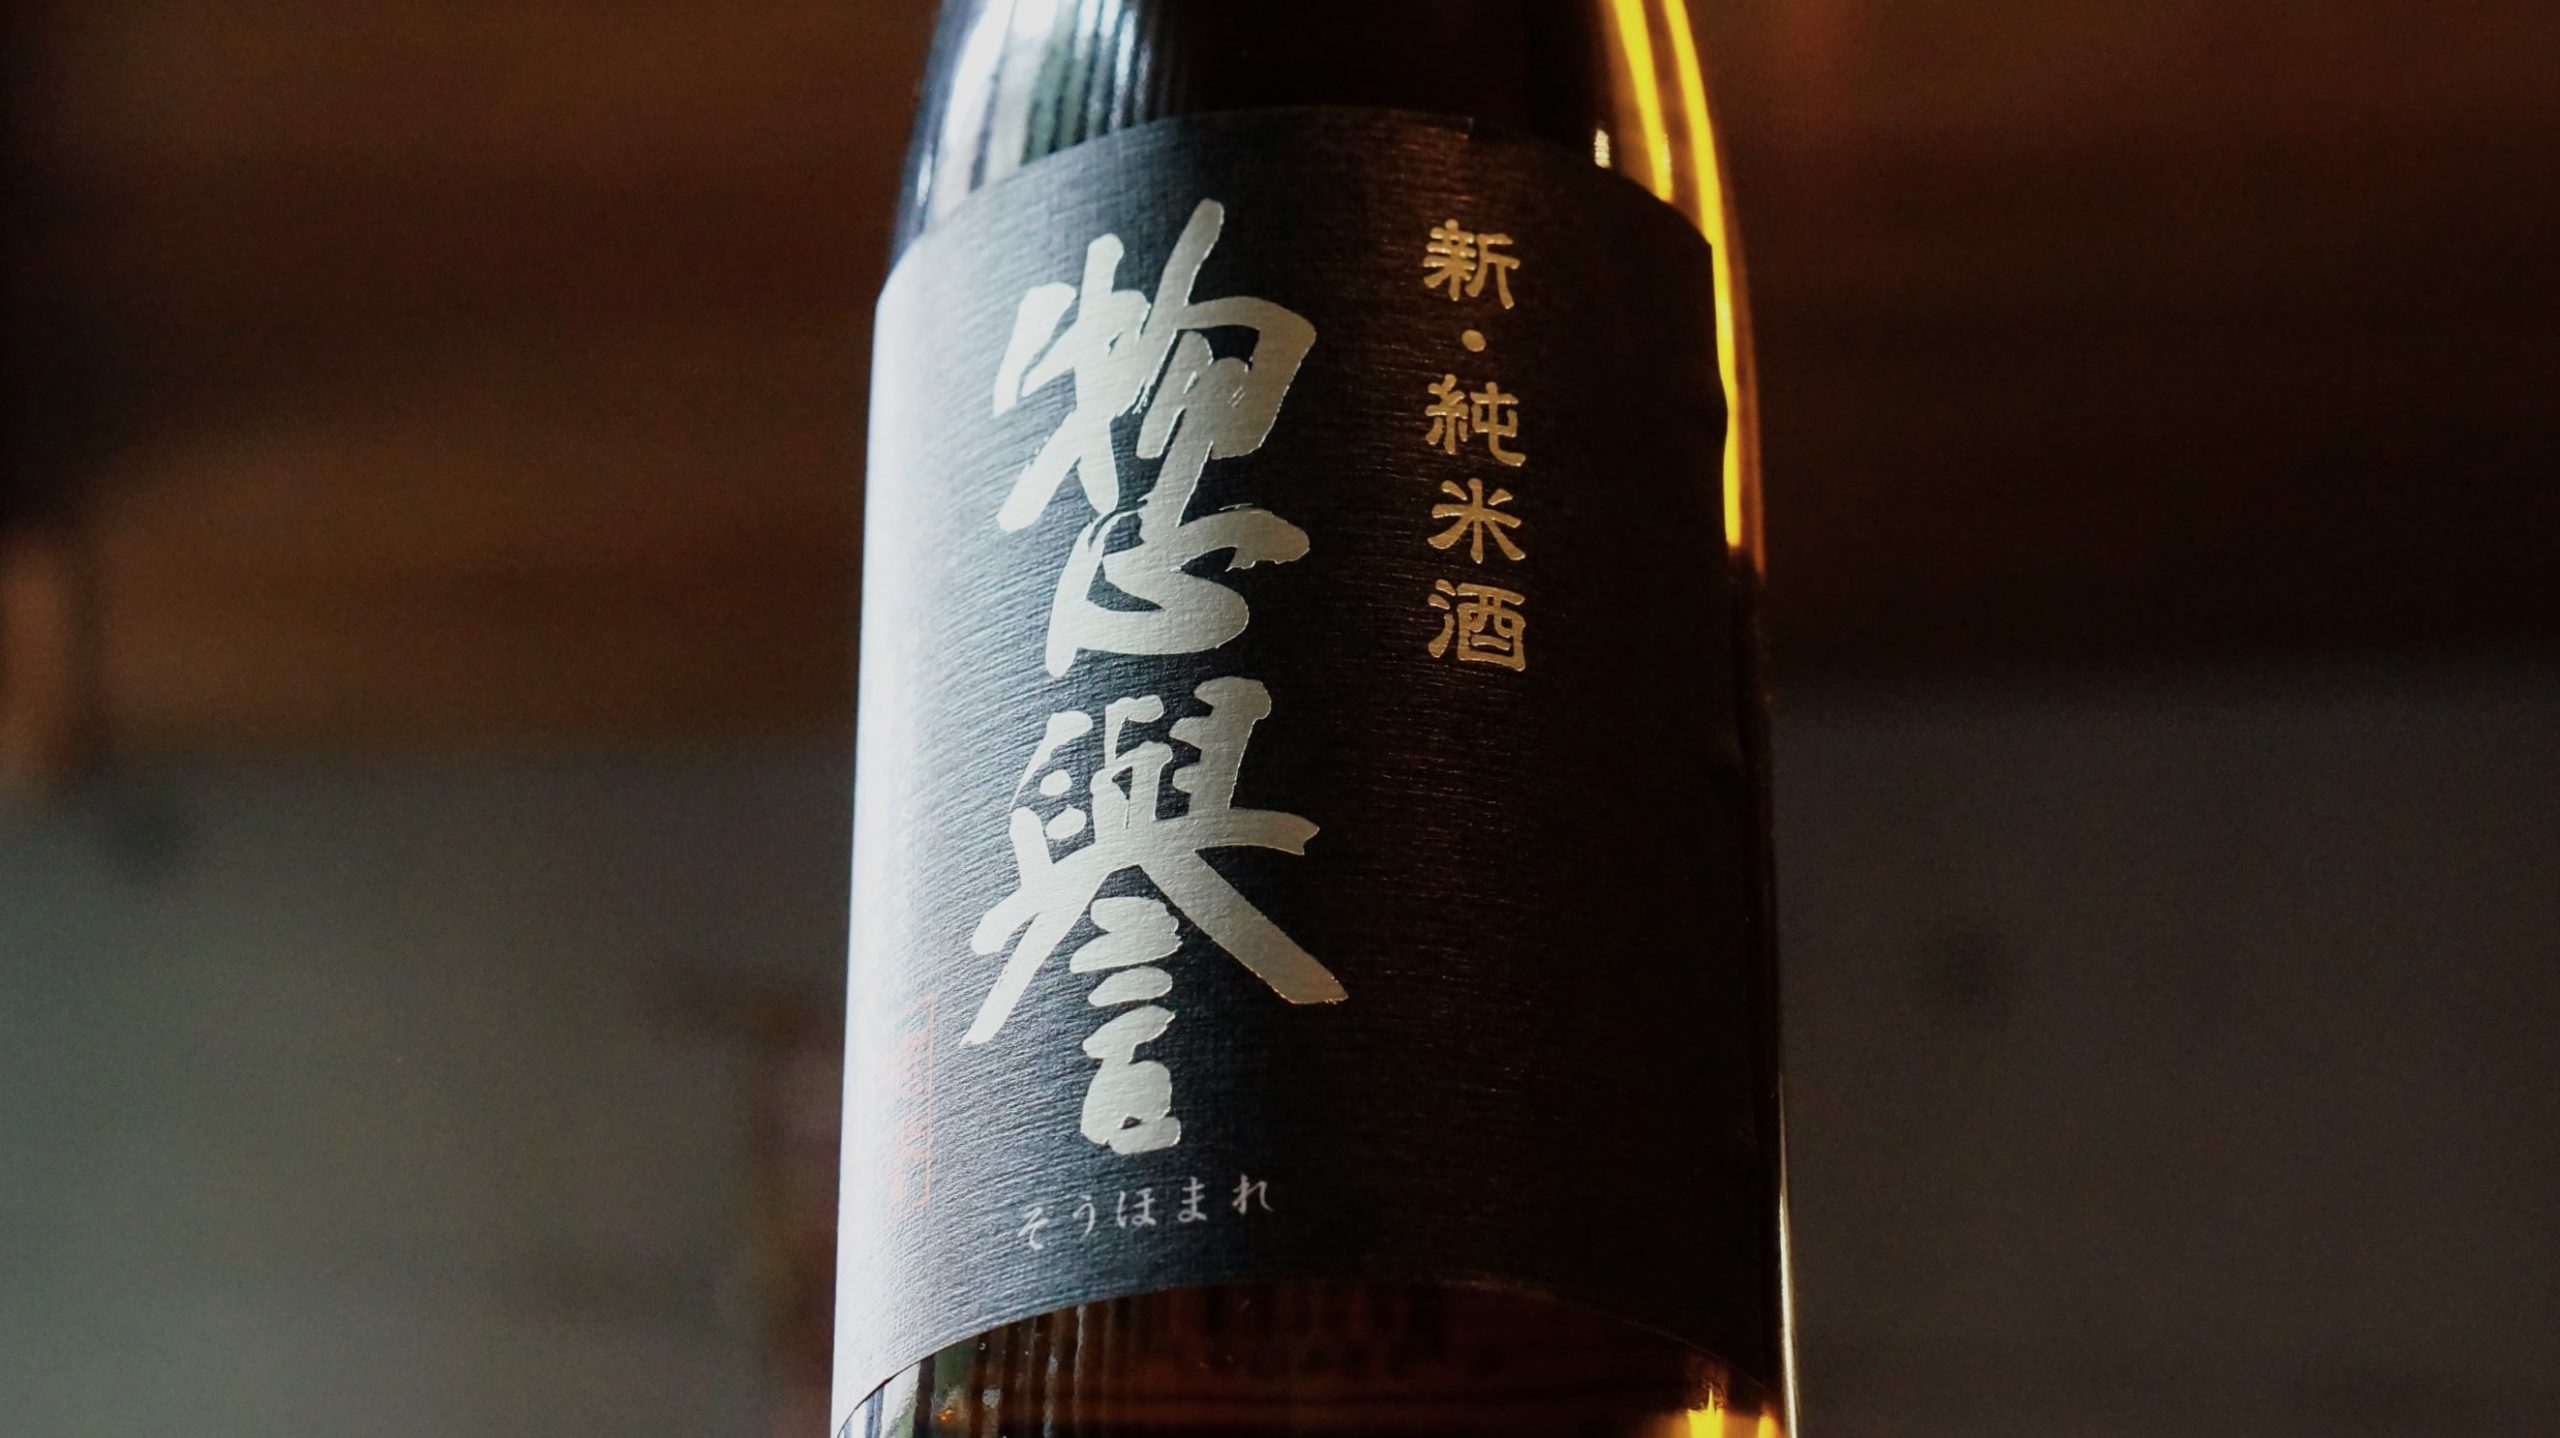 「惣誉 新・純米酒」のラベルのアップ写真。黒地に白で大きく惣誉のロゴ。